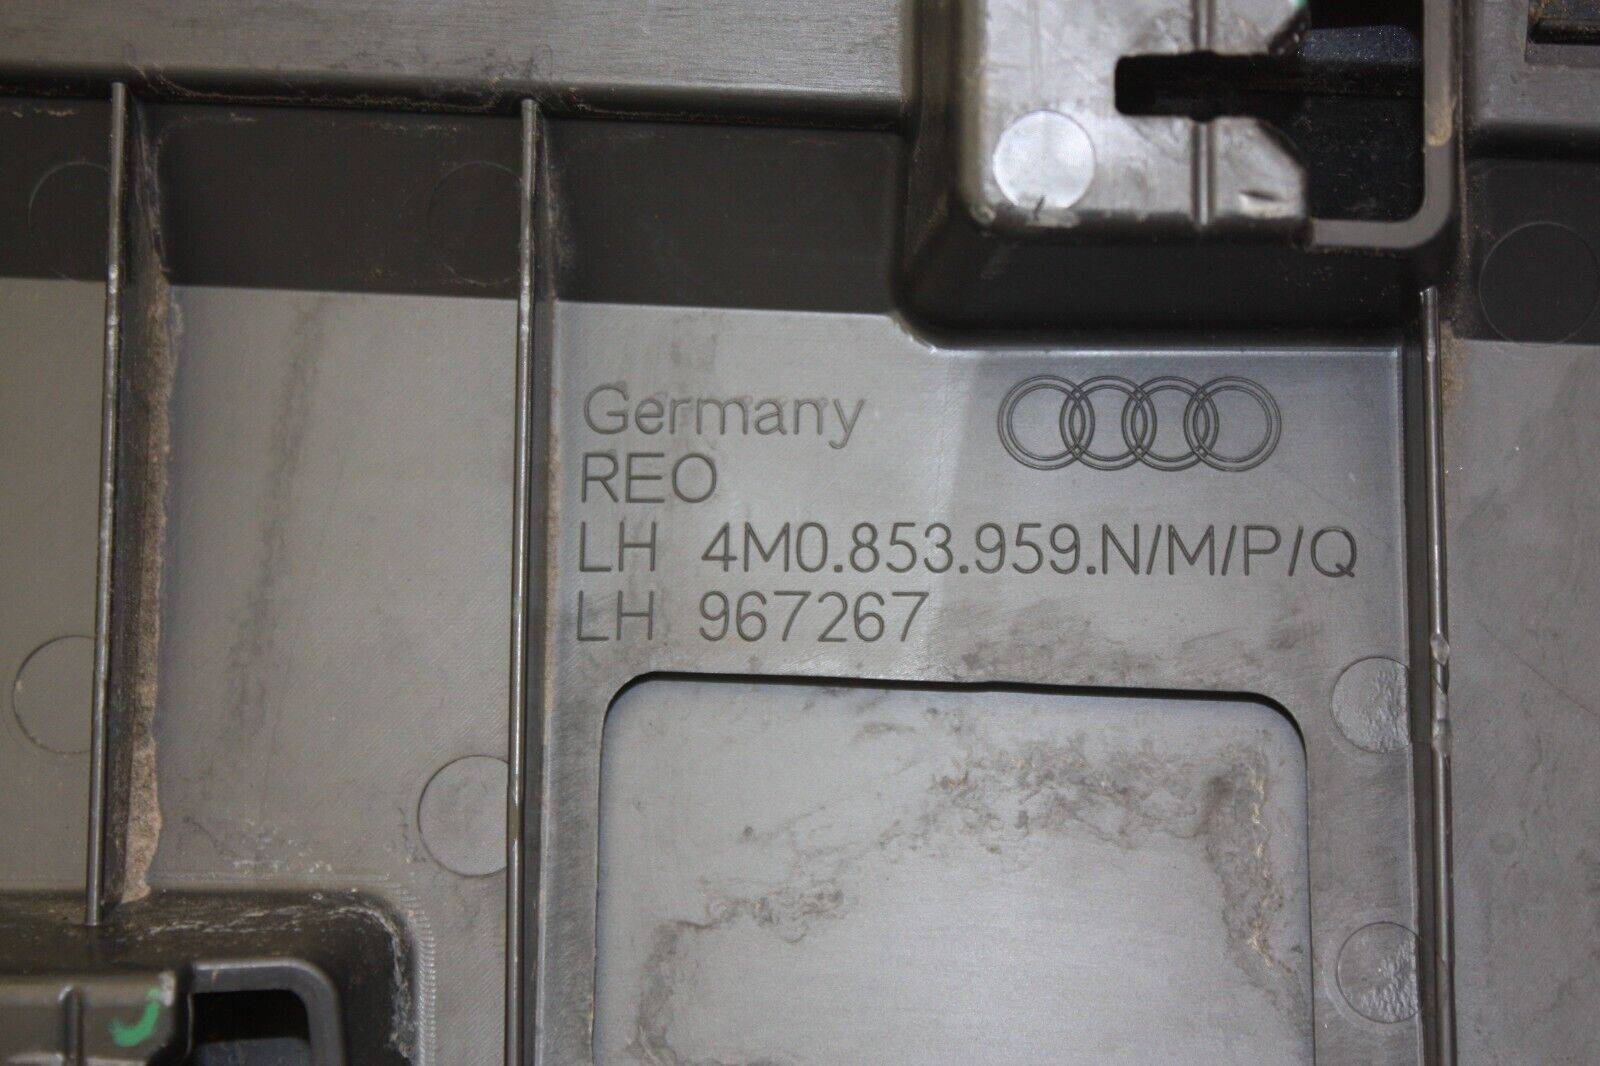 Audi-Q7-S-Line-Front-Left-Door-Moulding-2019-ON-4M0853959N-Genuine-DAMAGED-176290365952-9